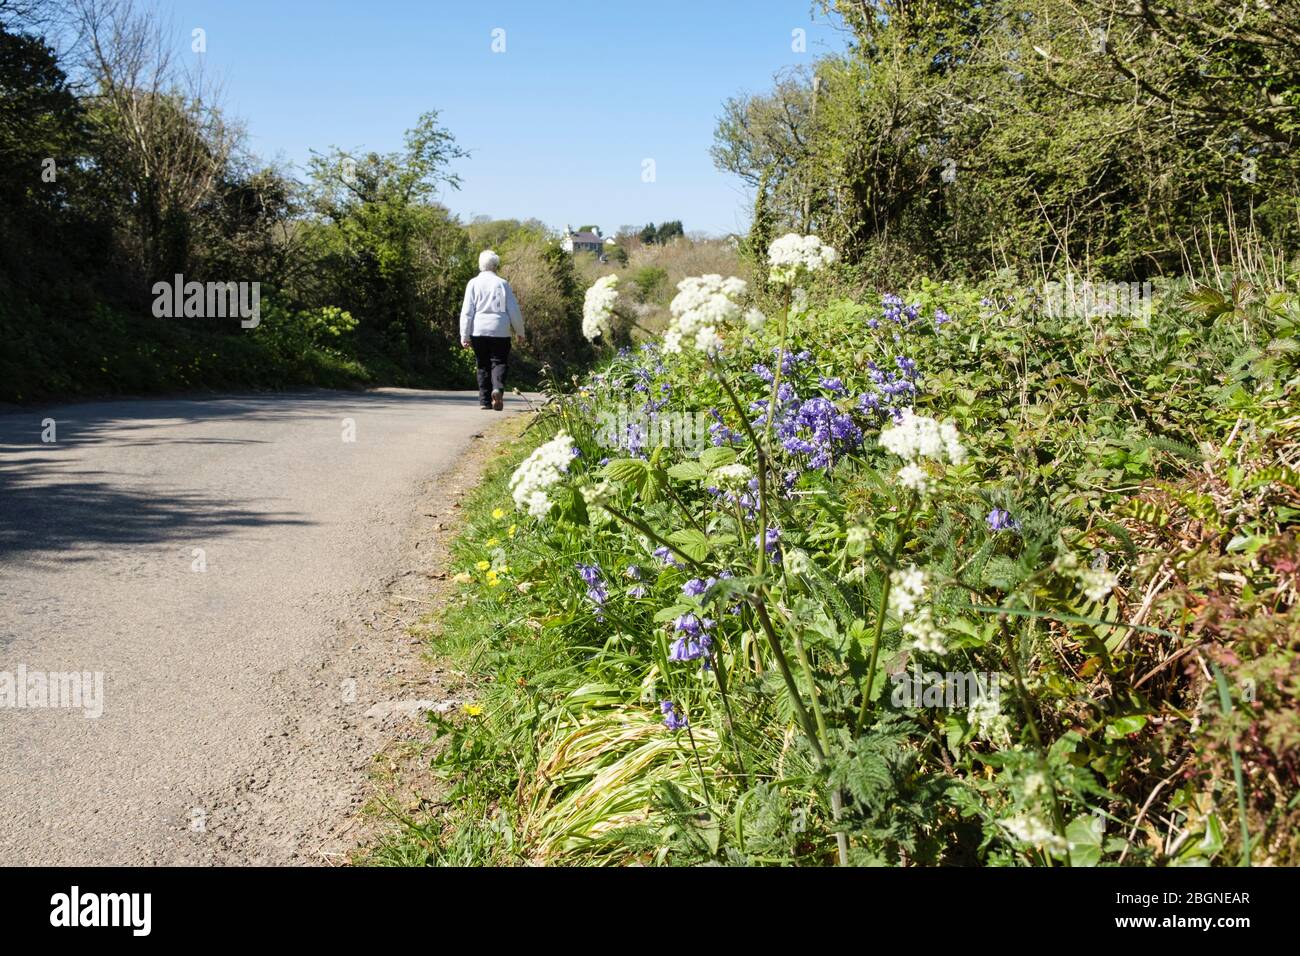 Couloir de campagne avec fleurs sauvages sur un verge d'herbe et une personne marchant sur une route calme au printemps. Benllech, Île d'Anglesey, Pays de Galles du Nord, Royaume-Uni, Grande-Bretagne Banque D'Images